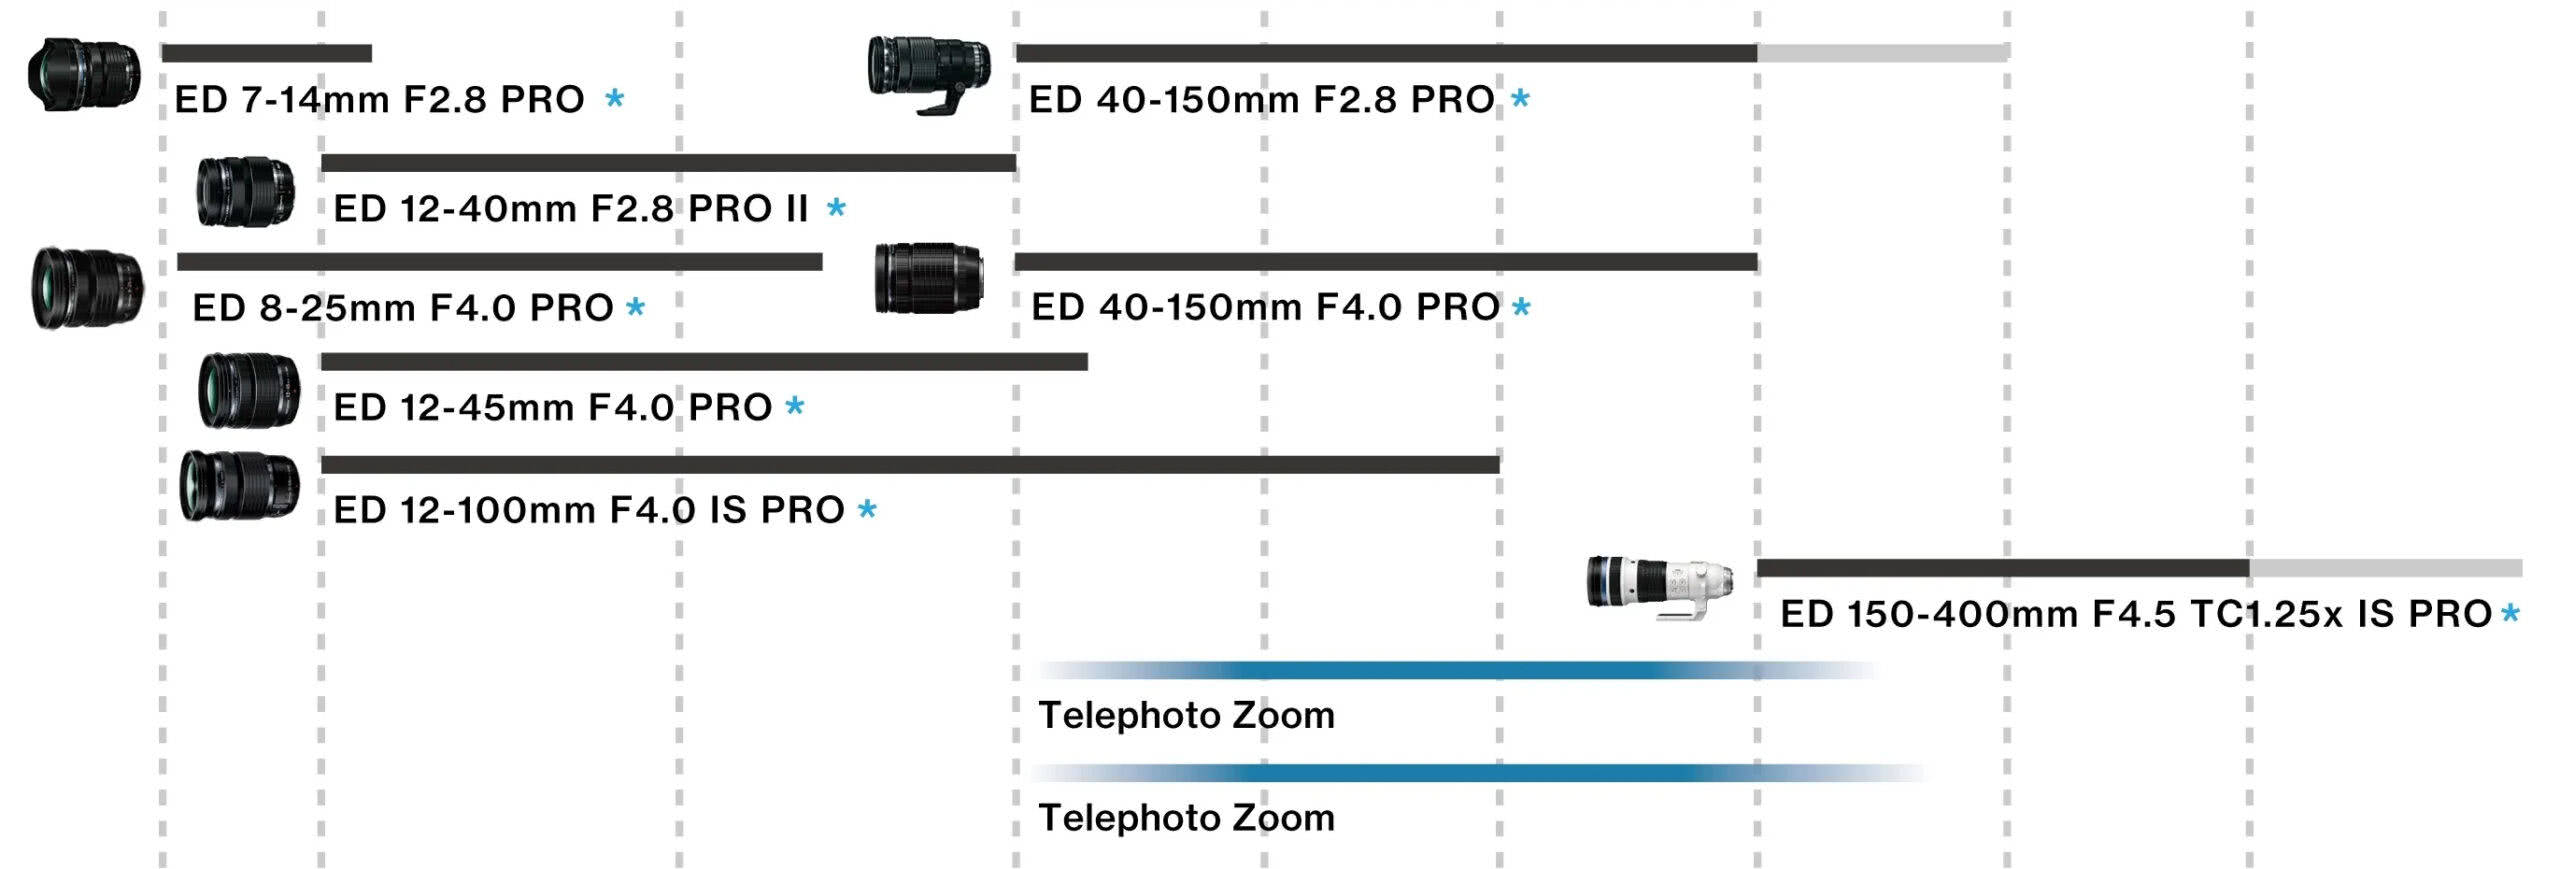 传言奥之心会推出50-200mm F2.8 PRO镜头